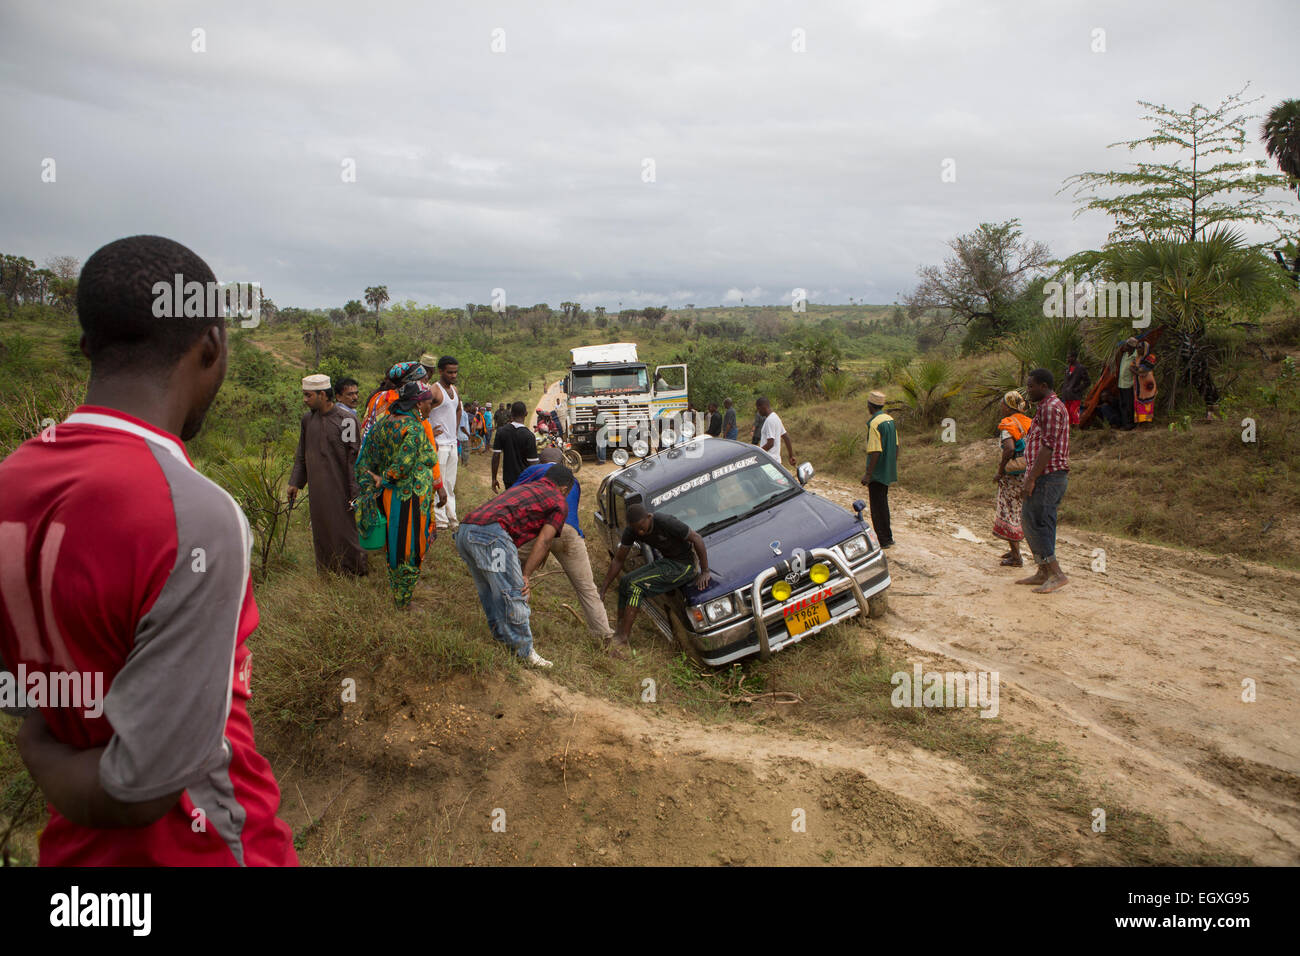 Veicoli disabili su un impassibile road vicino a tanga, Tanzania Africa Orientale. Foto Stock